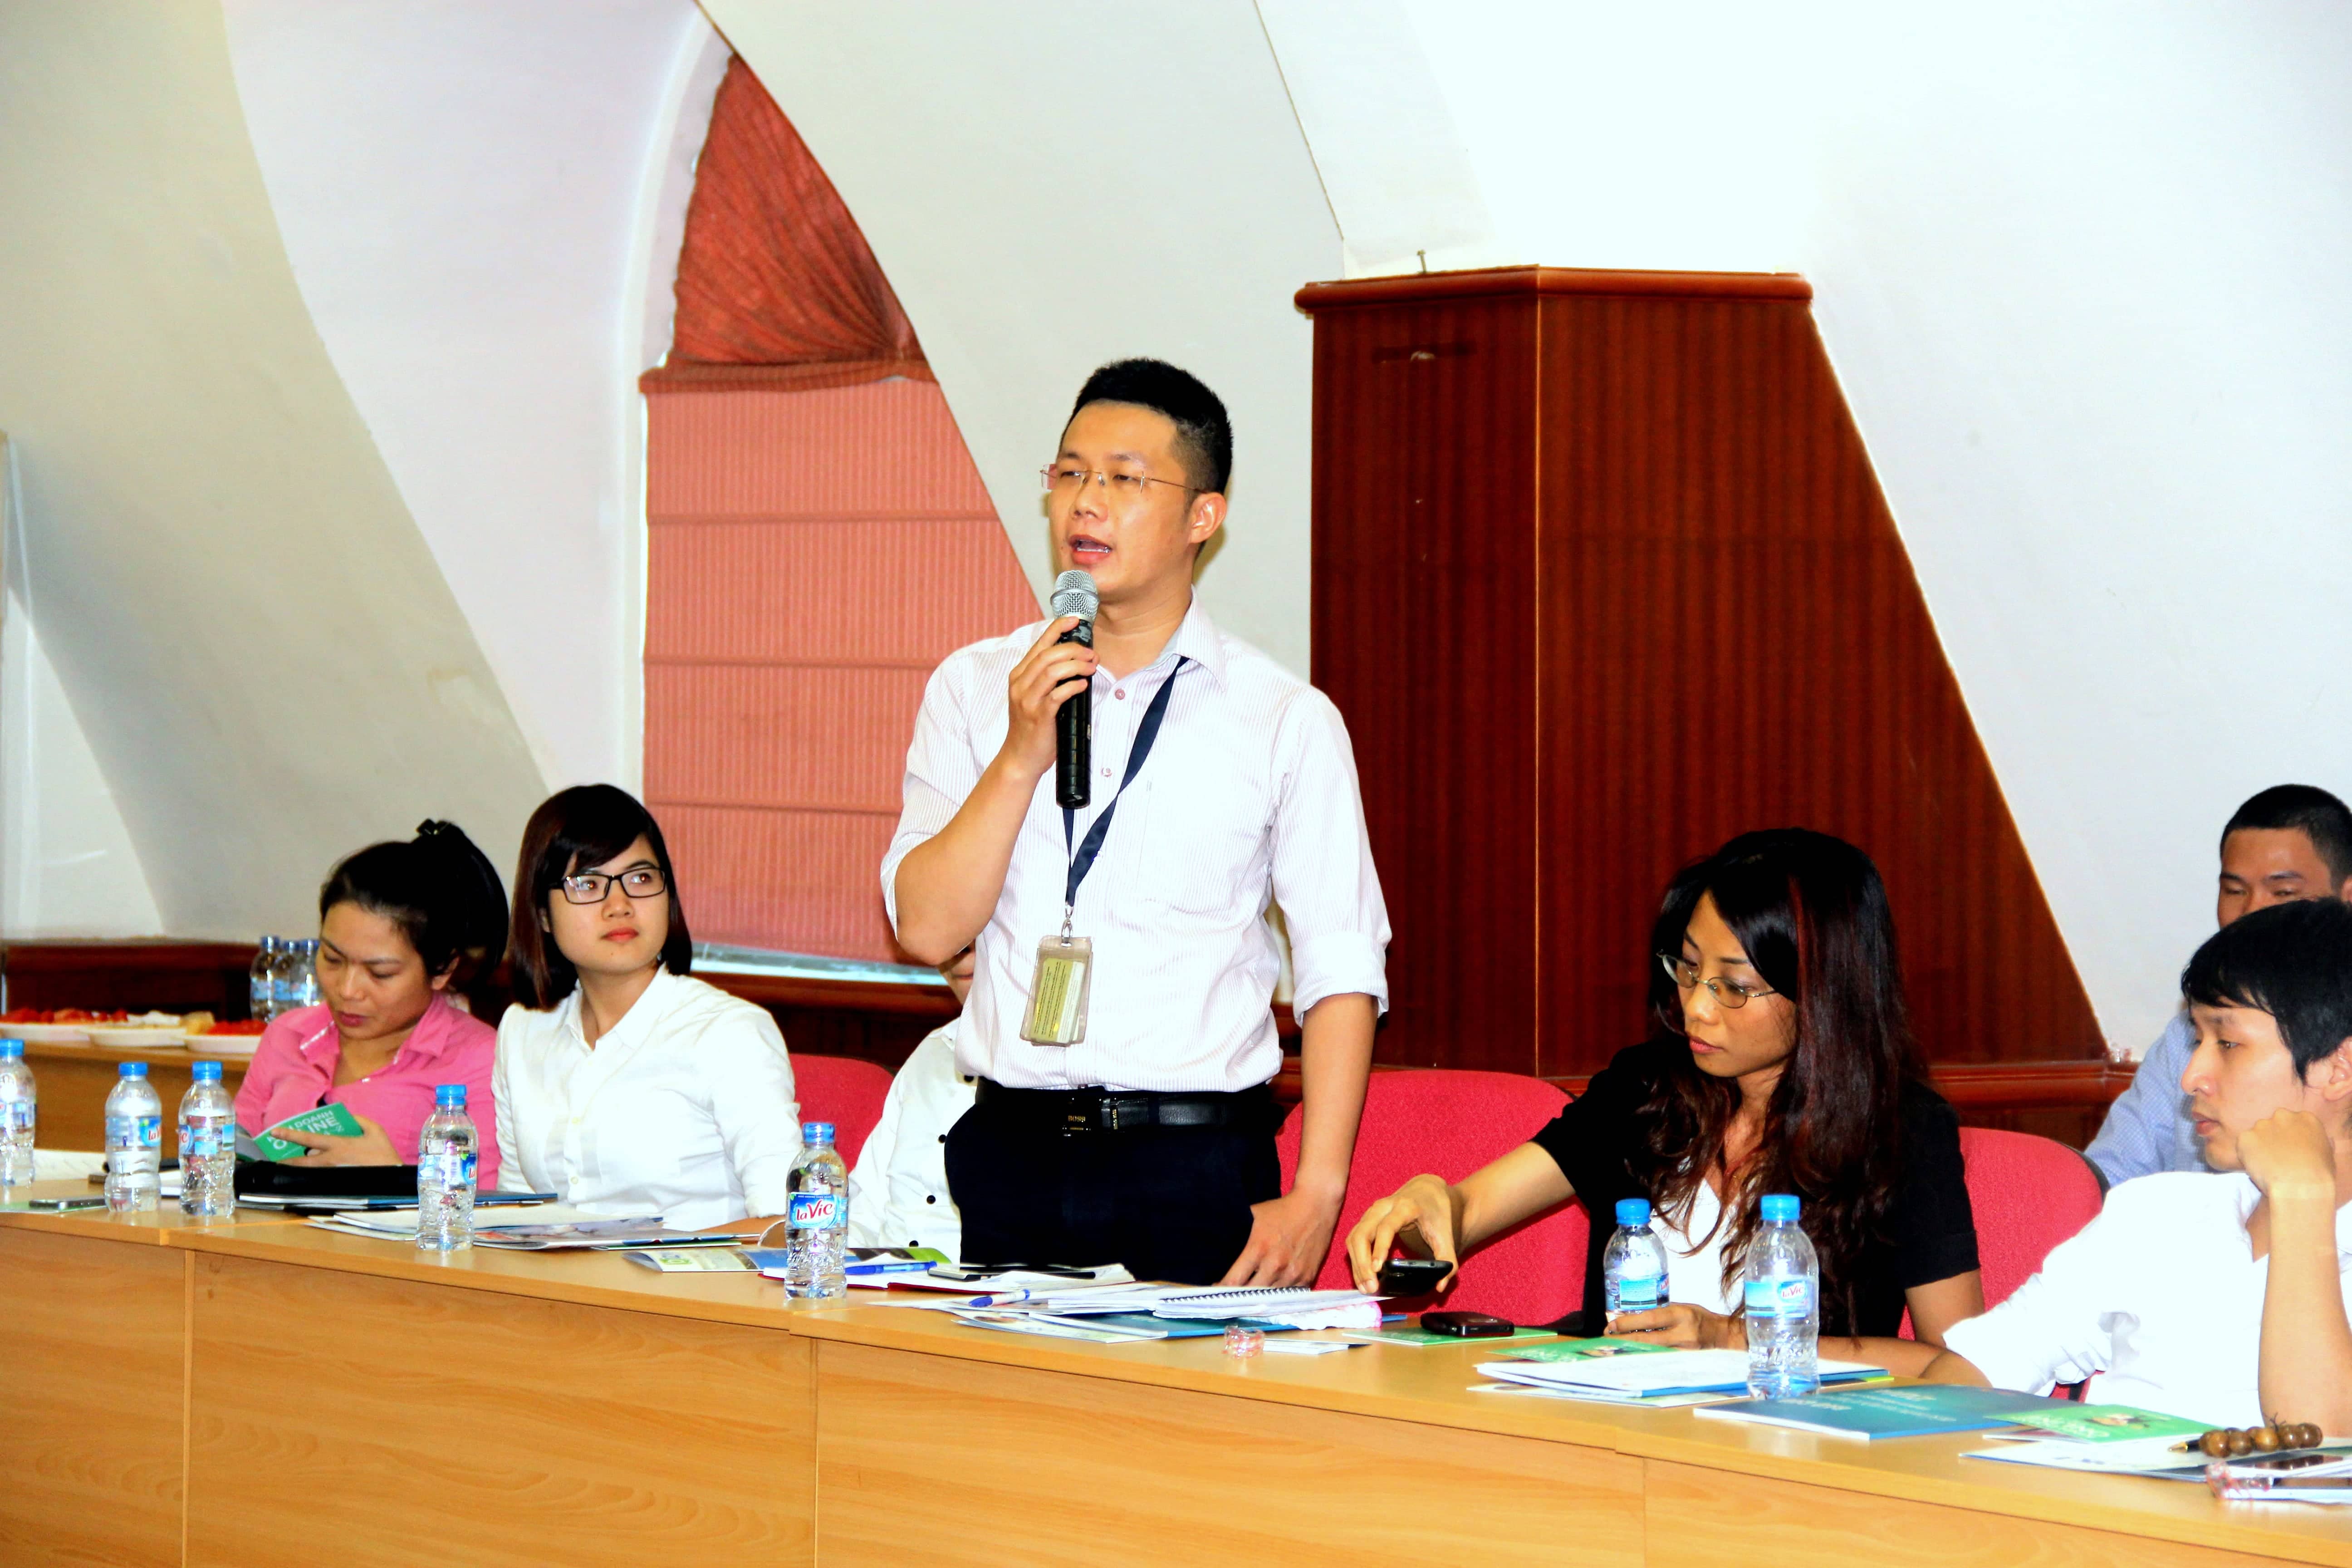 Ông Phạm Văn Đức – đại diện Cổng thanh toán Onepay mong muốn sẽ có buổi gặp mặt hội viên với chủ đề thanh toán trong thương mại điện tử